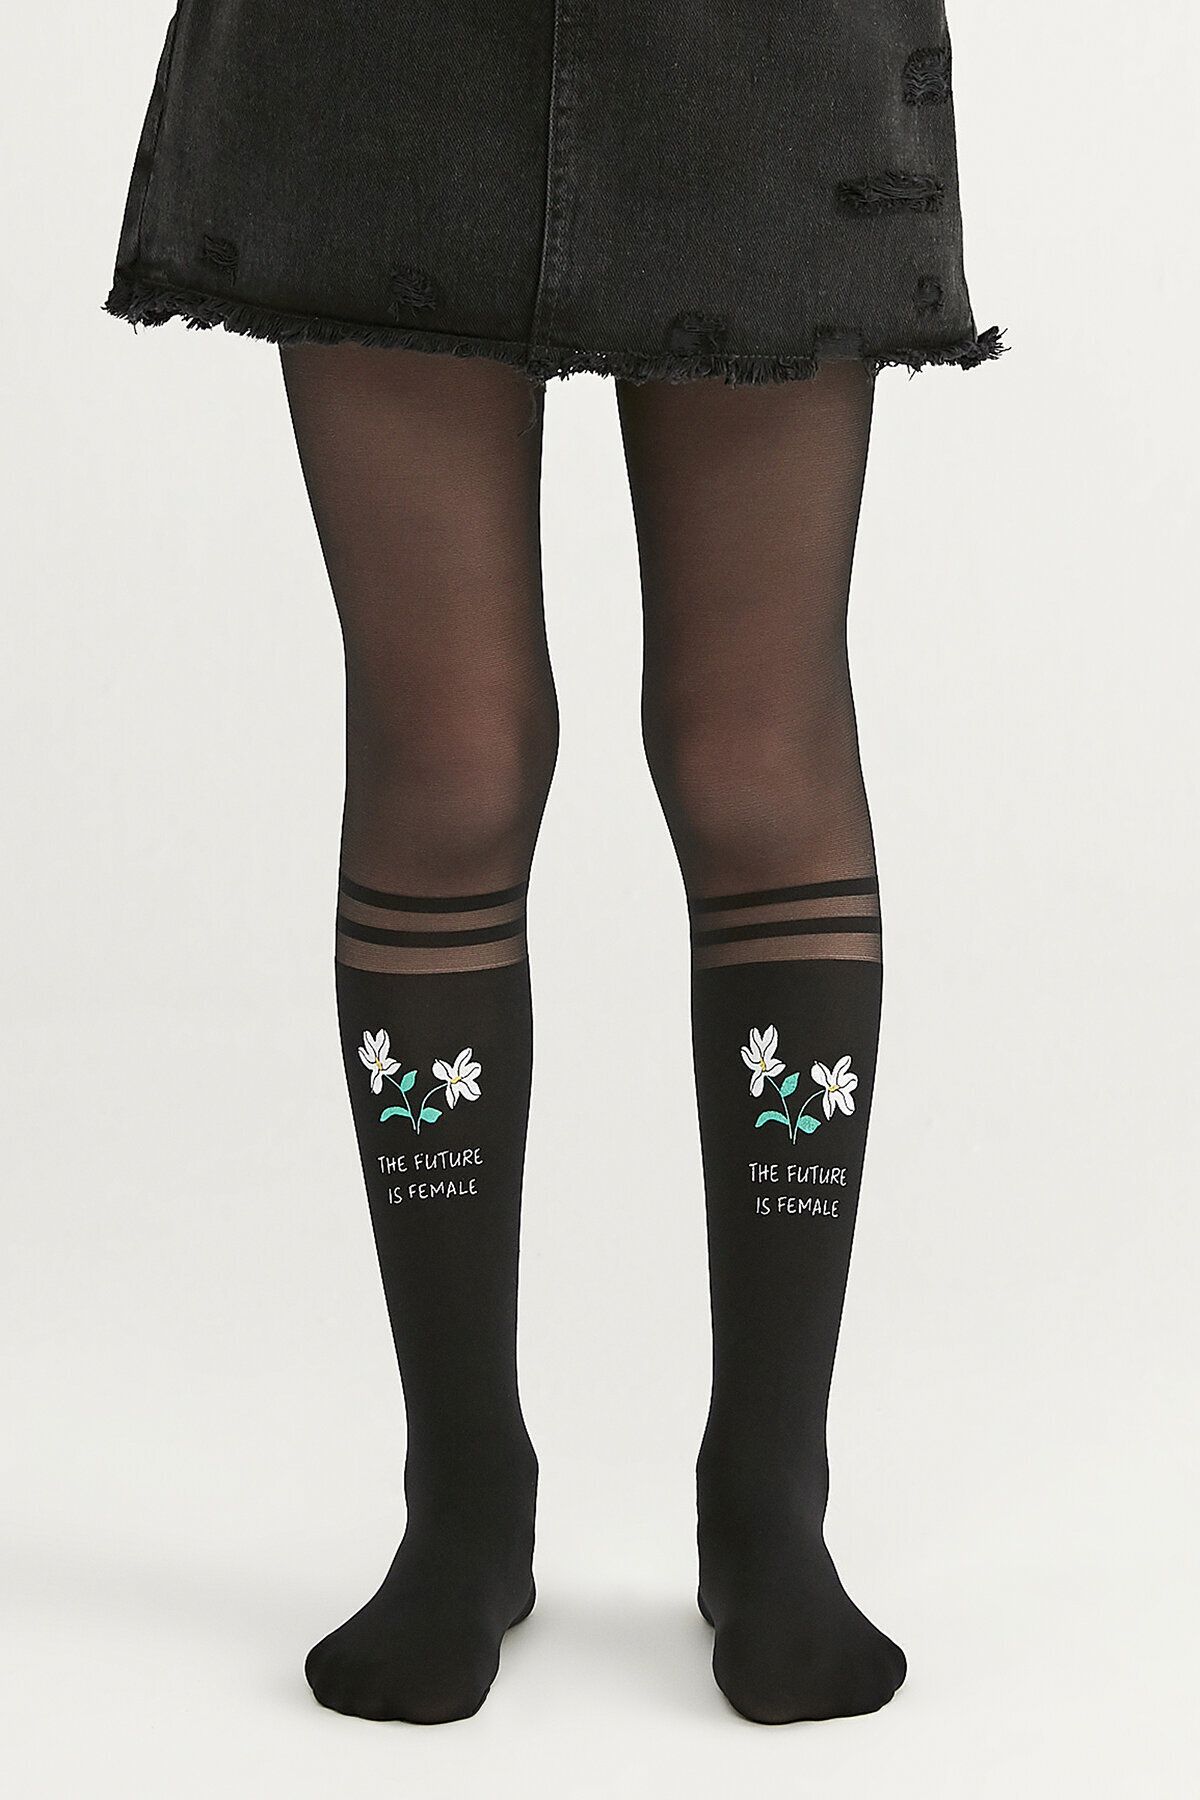 Penti Siyah Kız Çocuk Desenli Külotlu Çorap